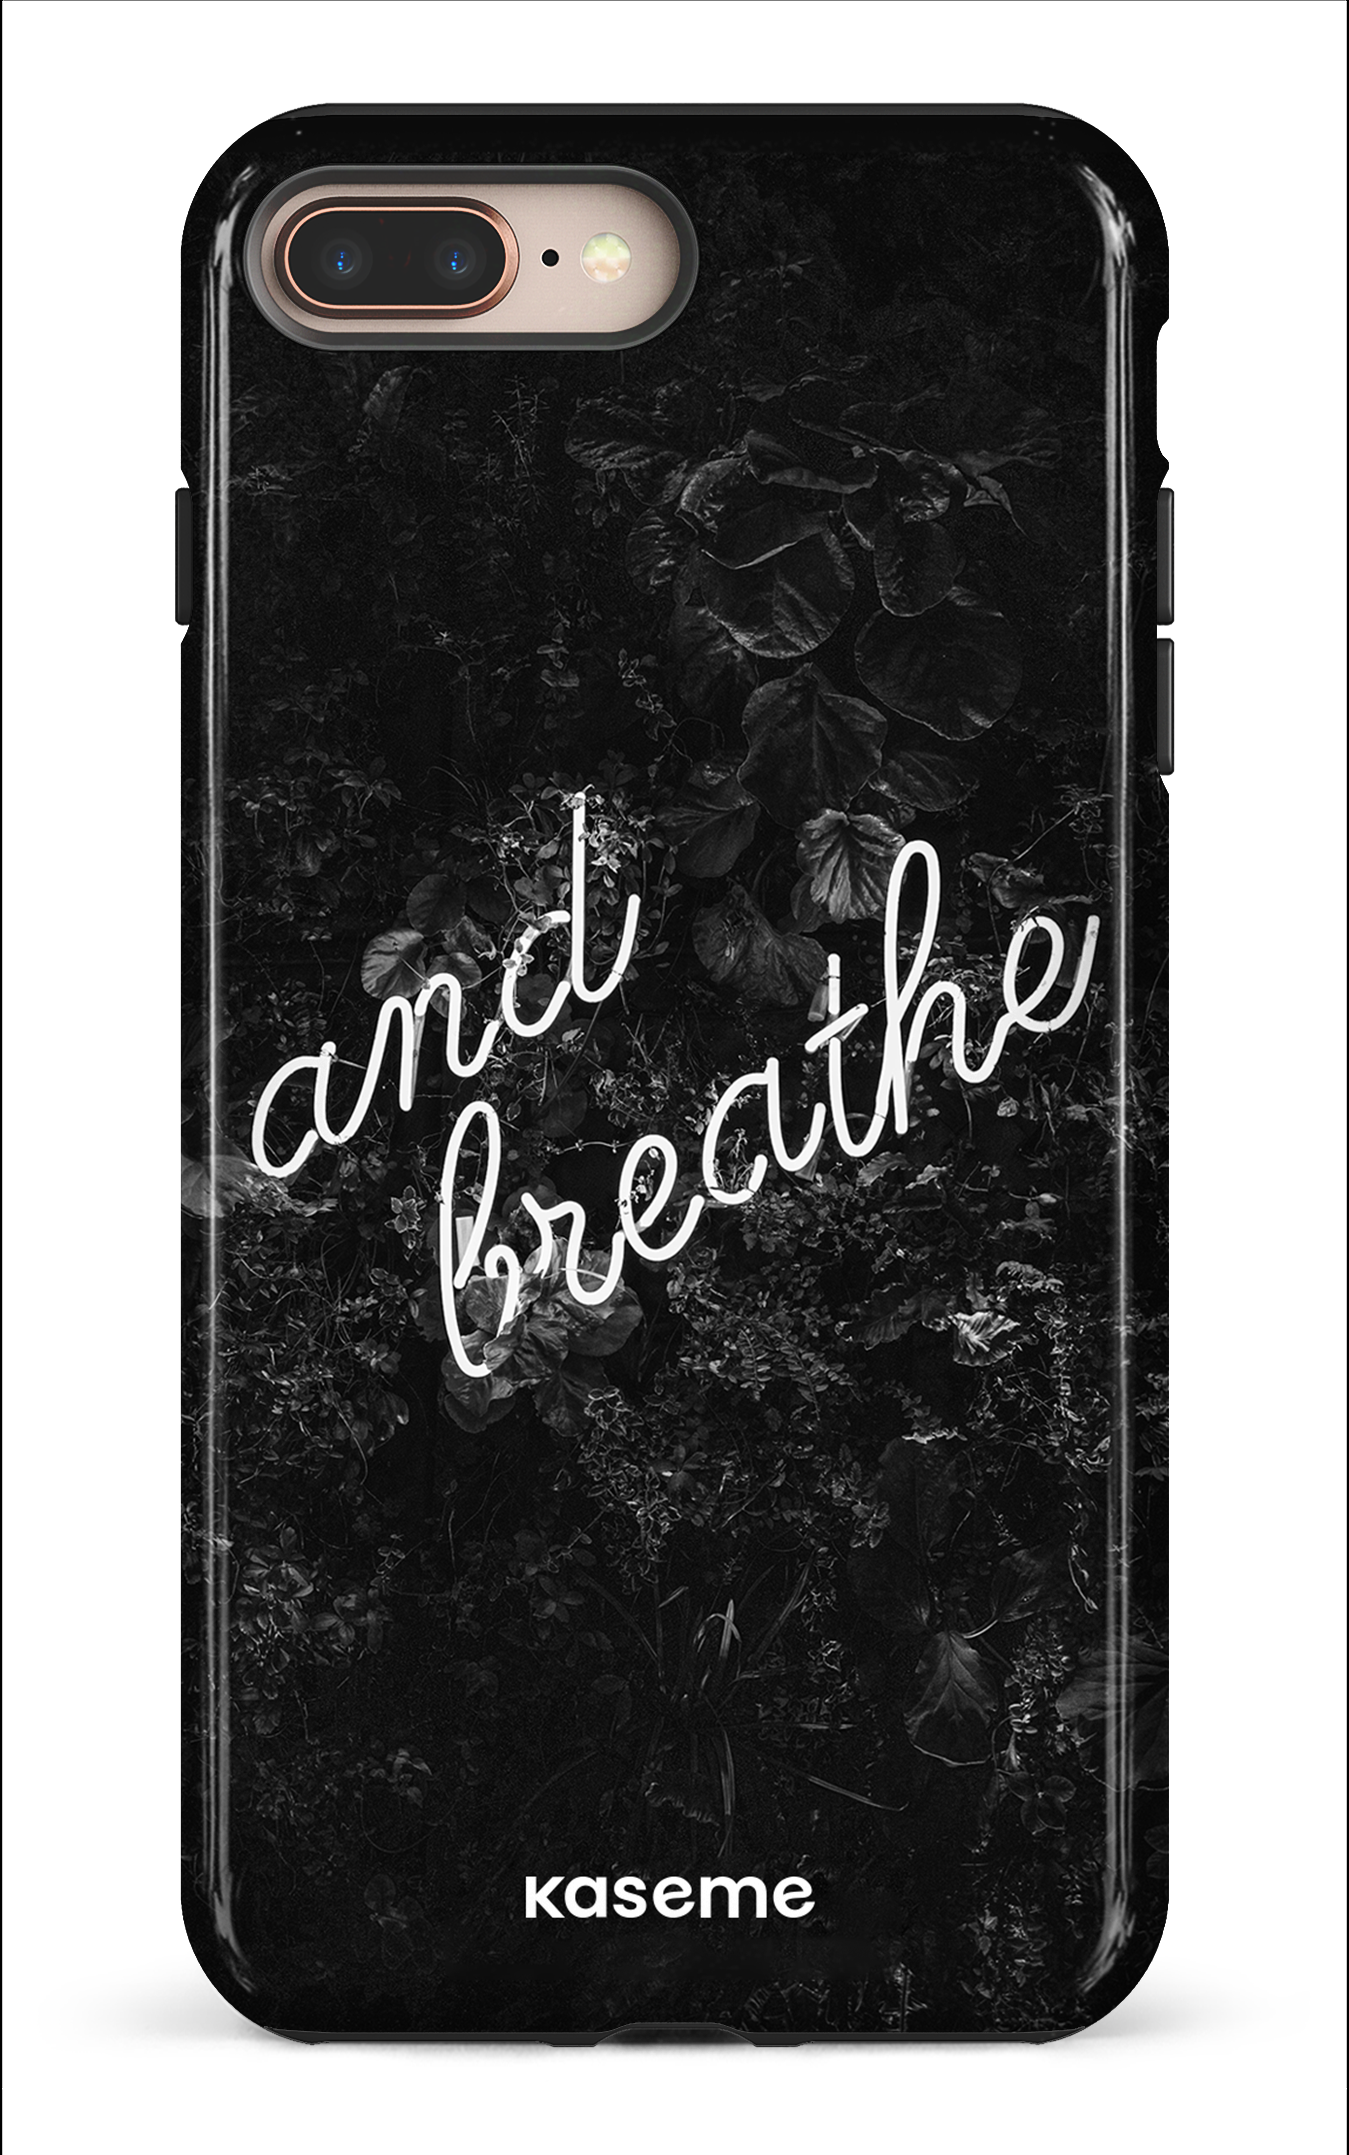 Exhale - iPhone 8 Plus